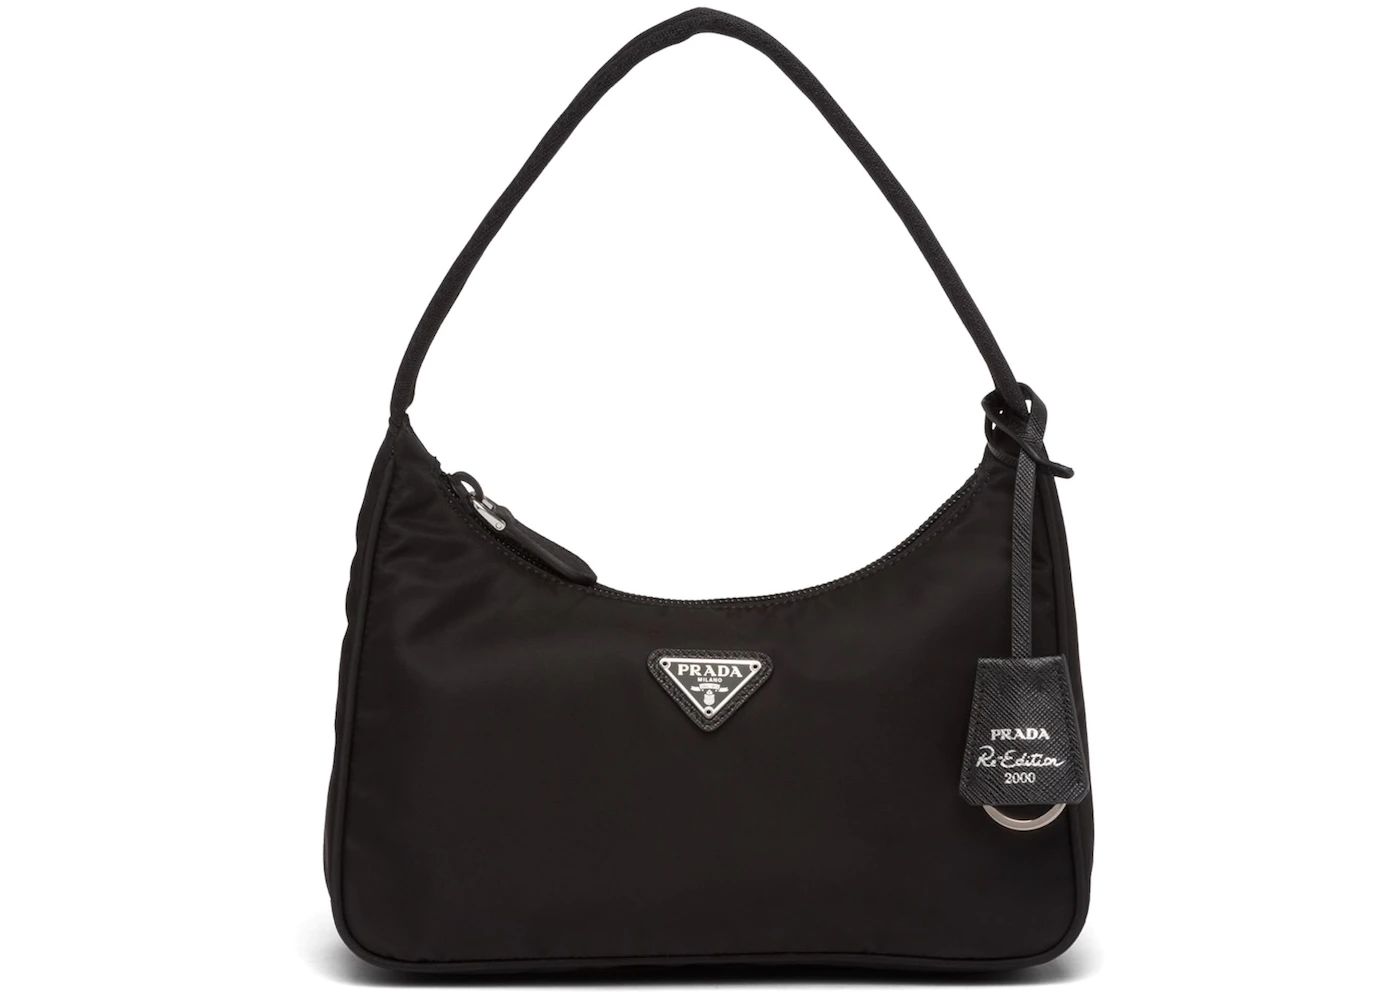 Prada Re-Edition 2000 Mini Bag Nylon Black  in Nylon/Saffiano Leather with Silver-tone | StockX